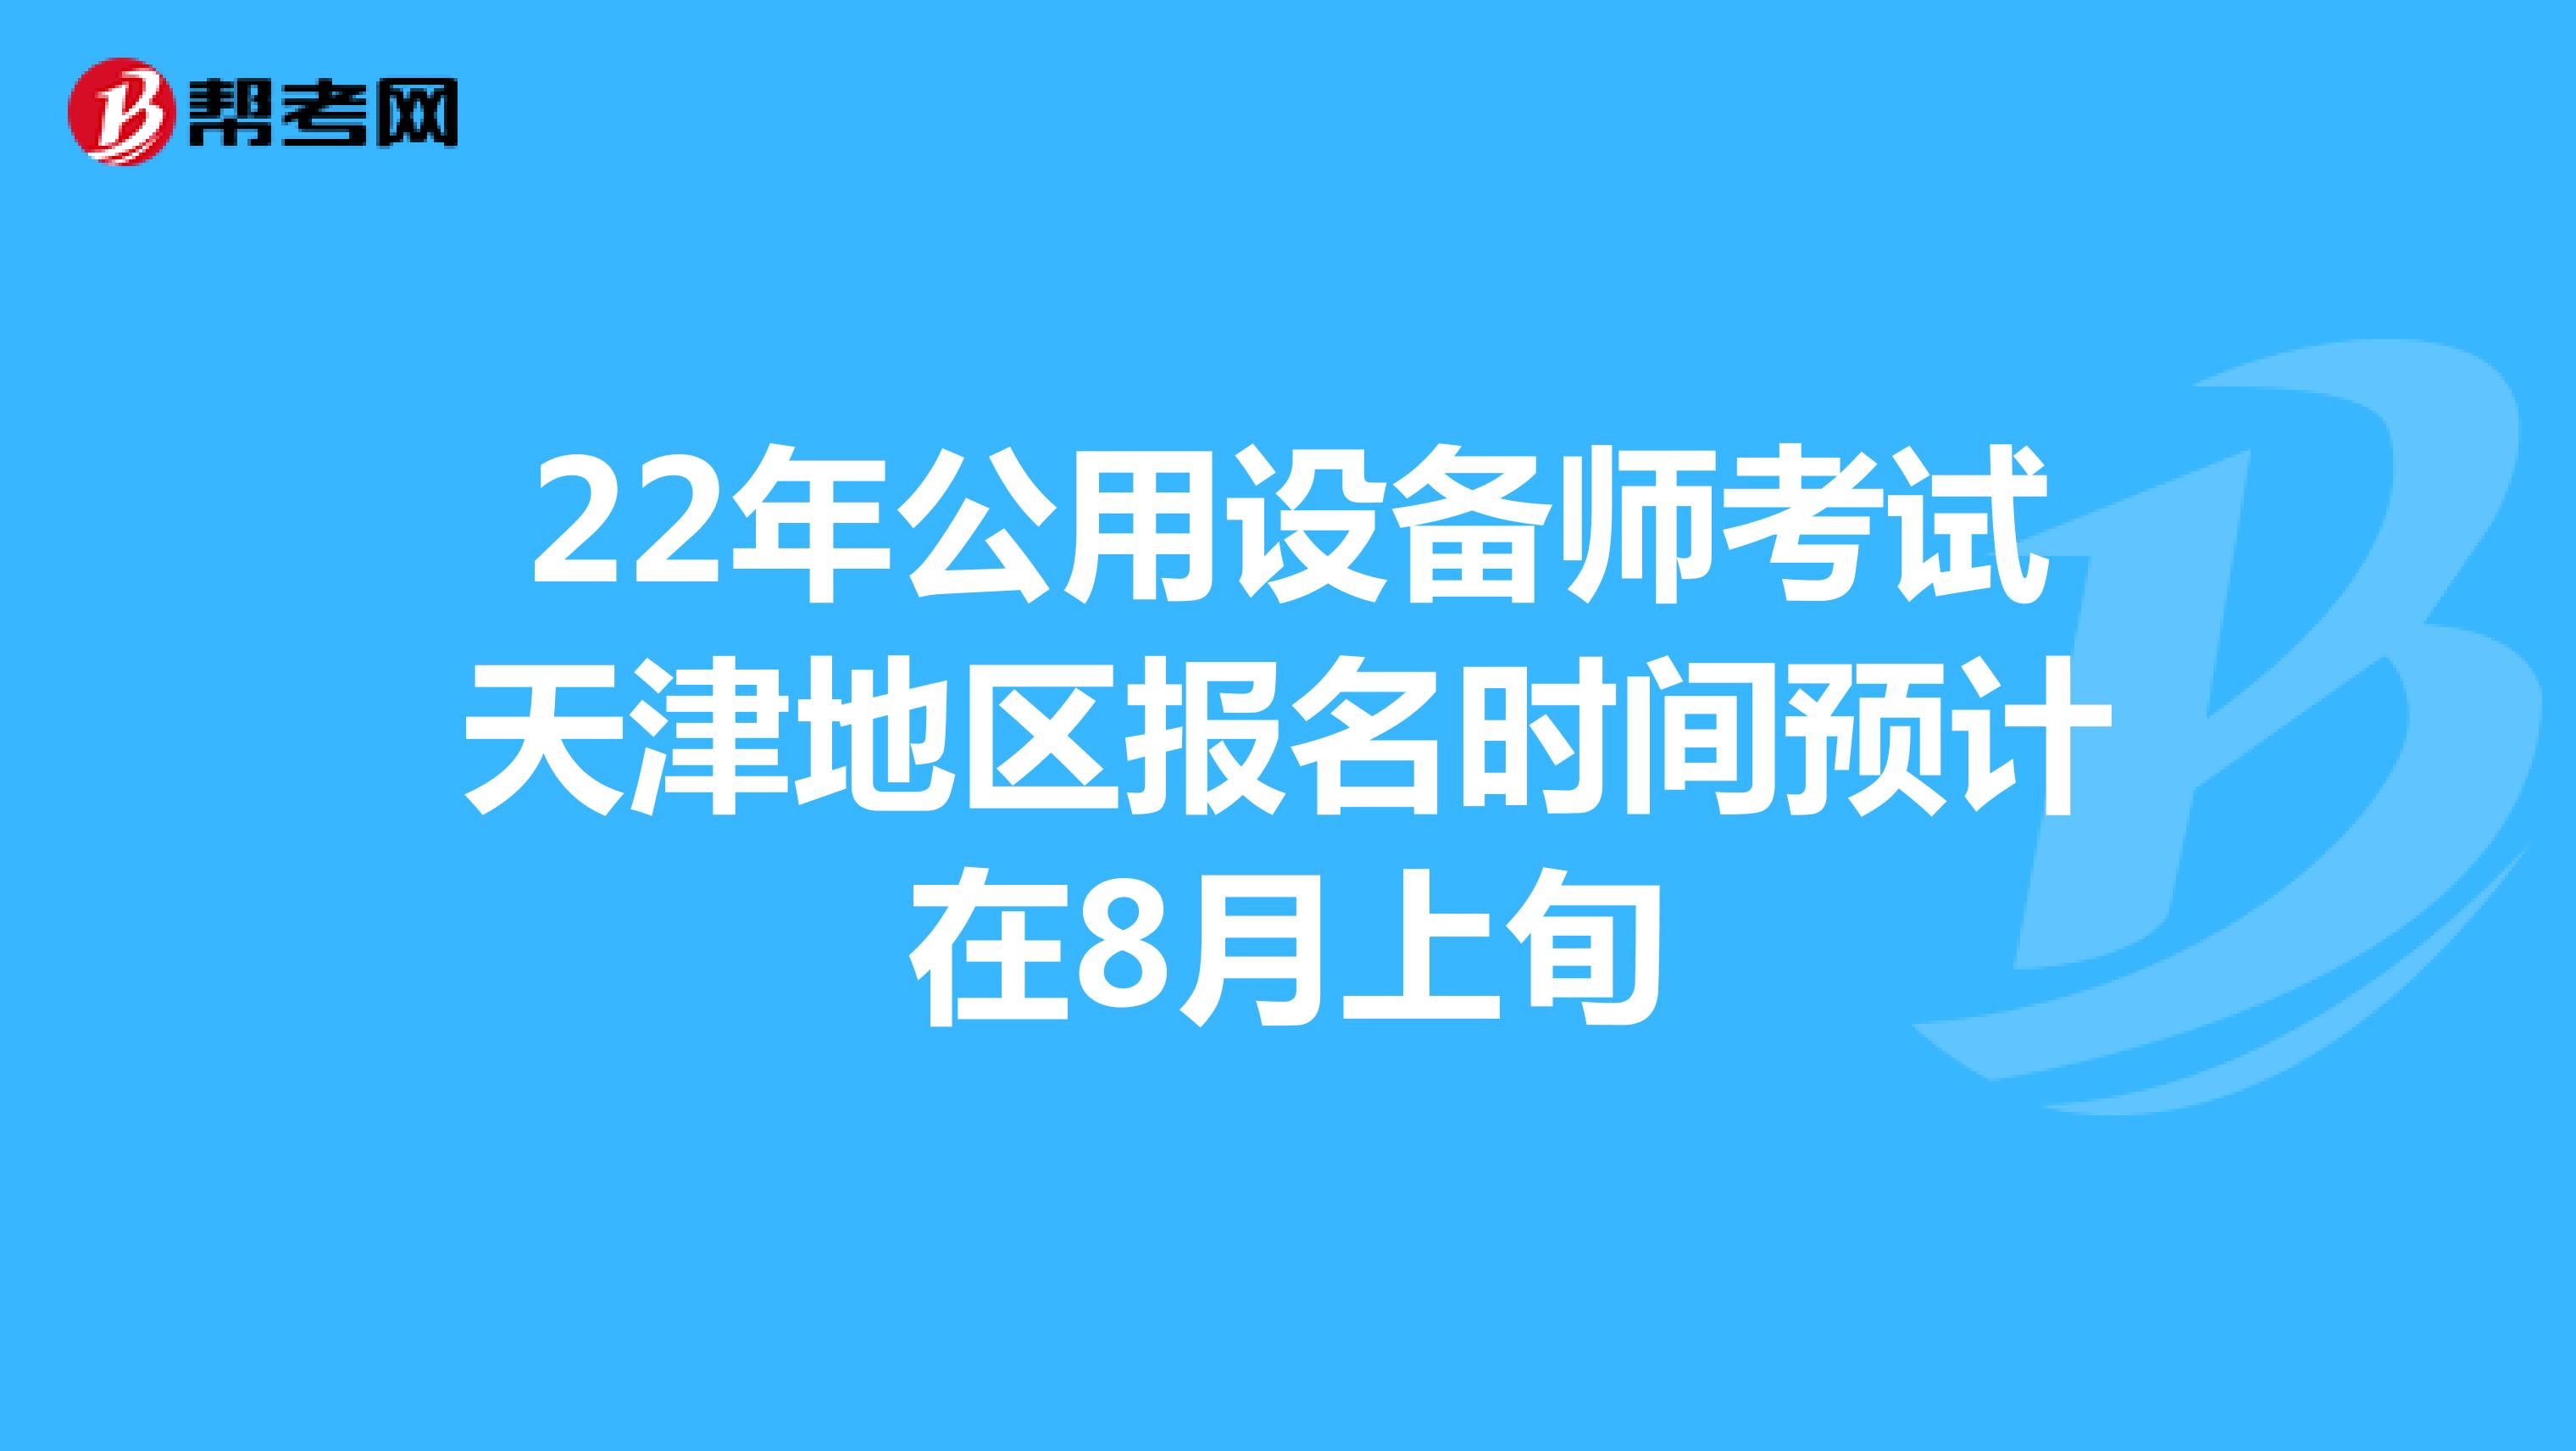 22年公用设备师考试天津地区报名时间预计在8月上旬